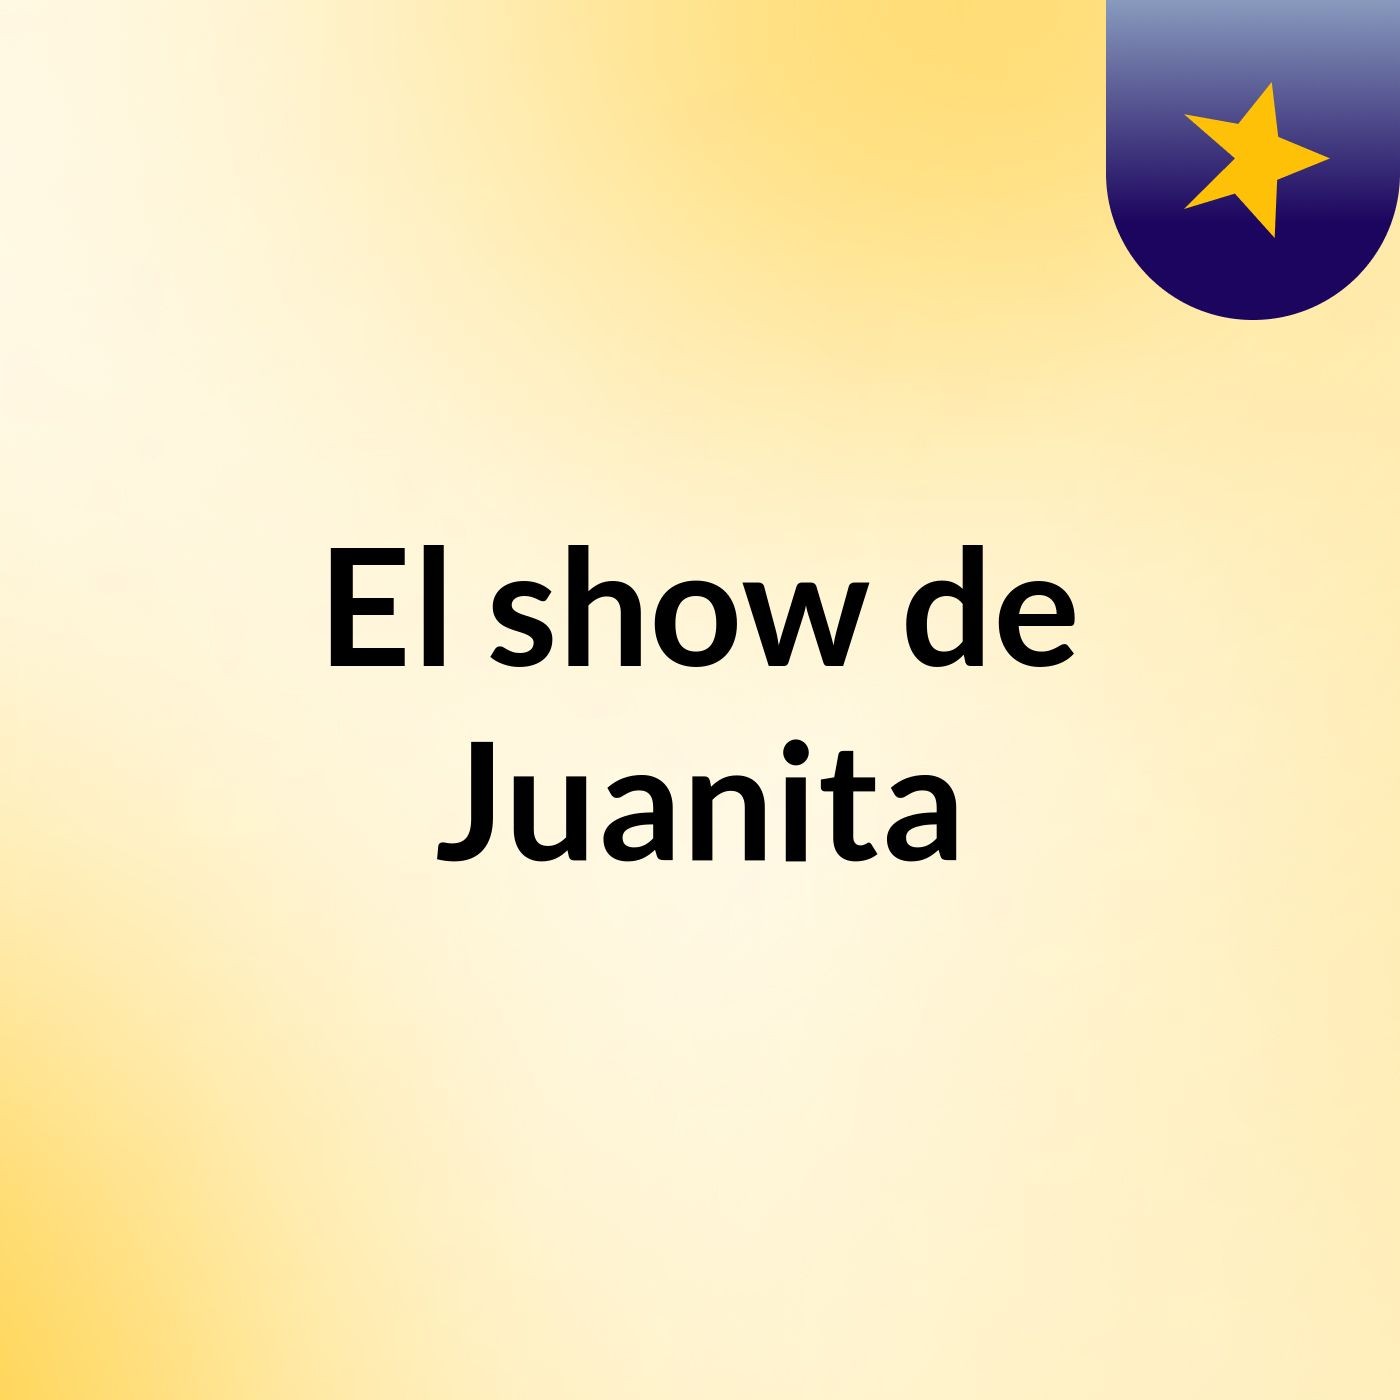 El show de Juanita